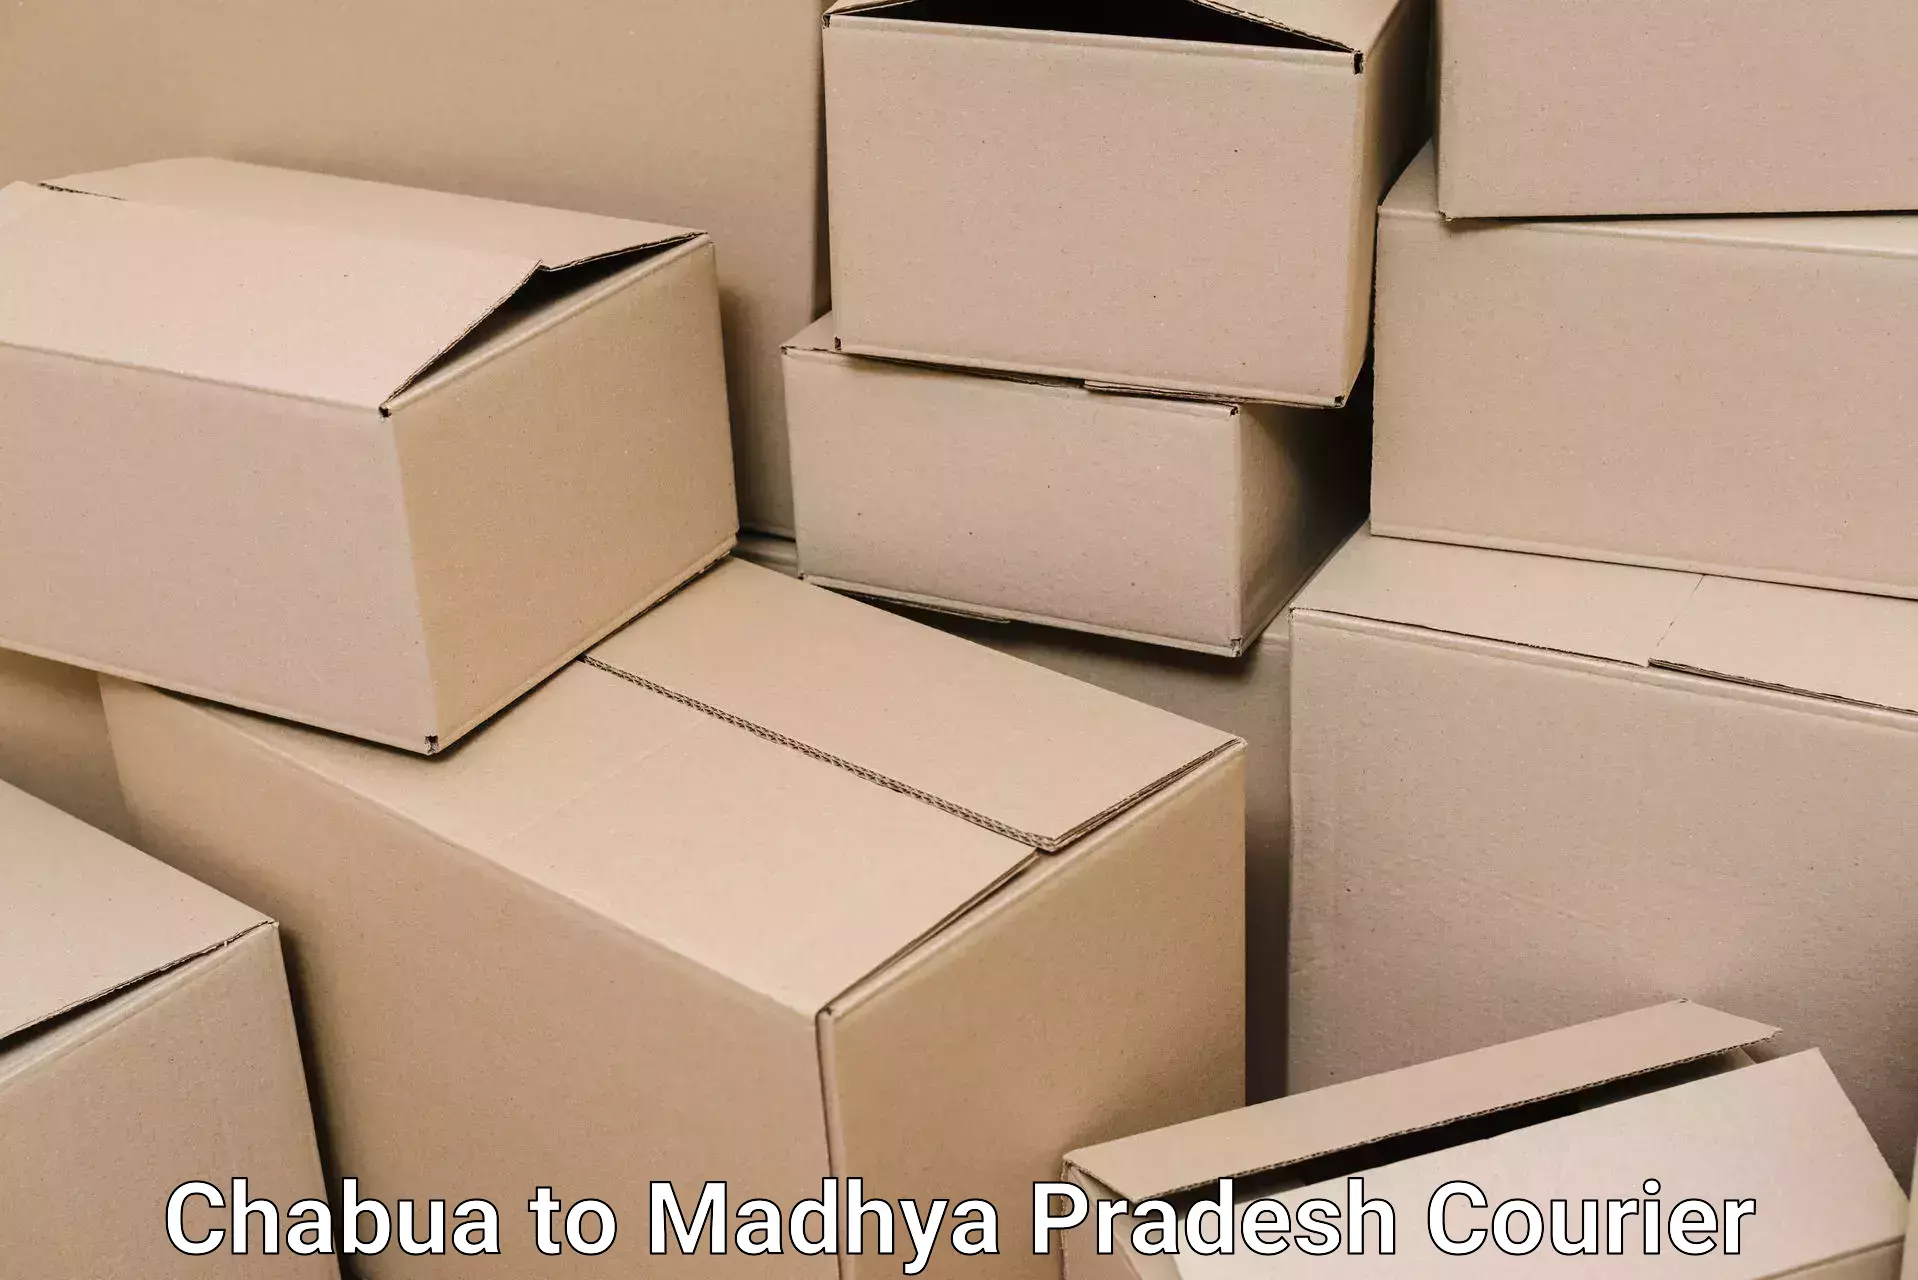 Furniture delivery service Chabua to Betul